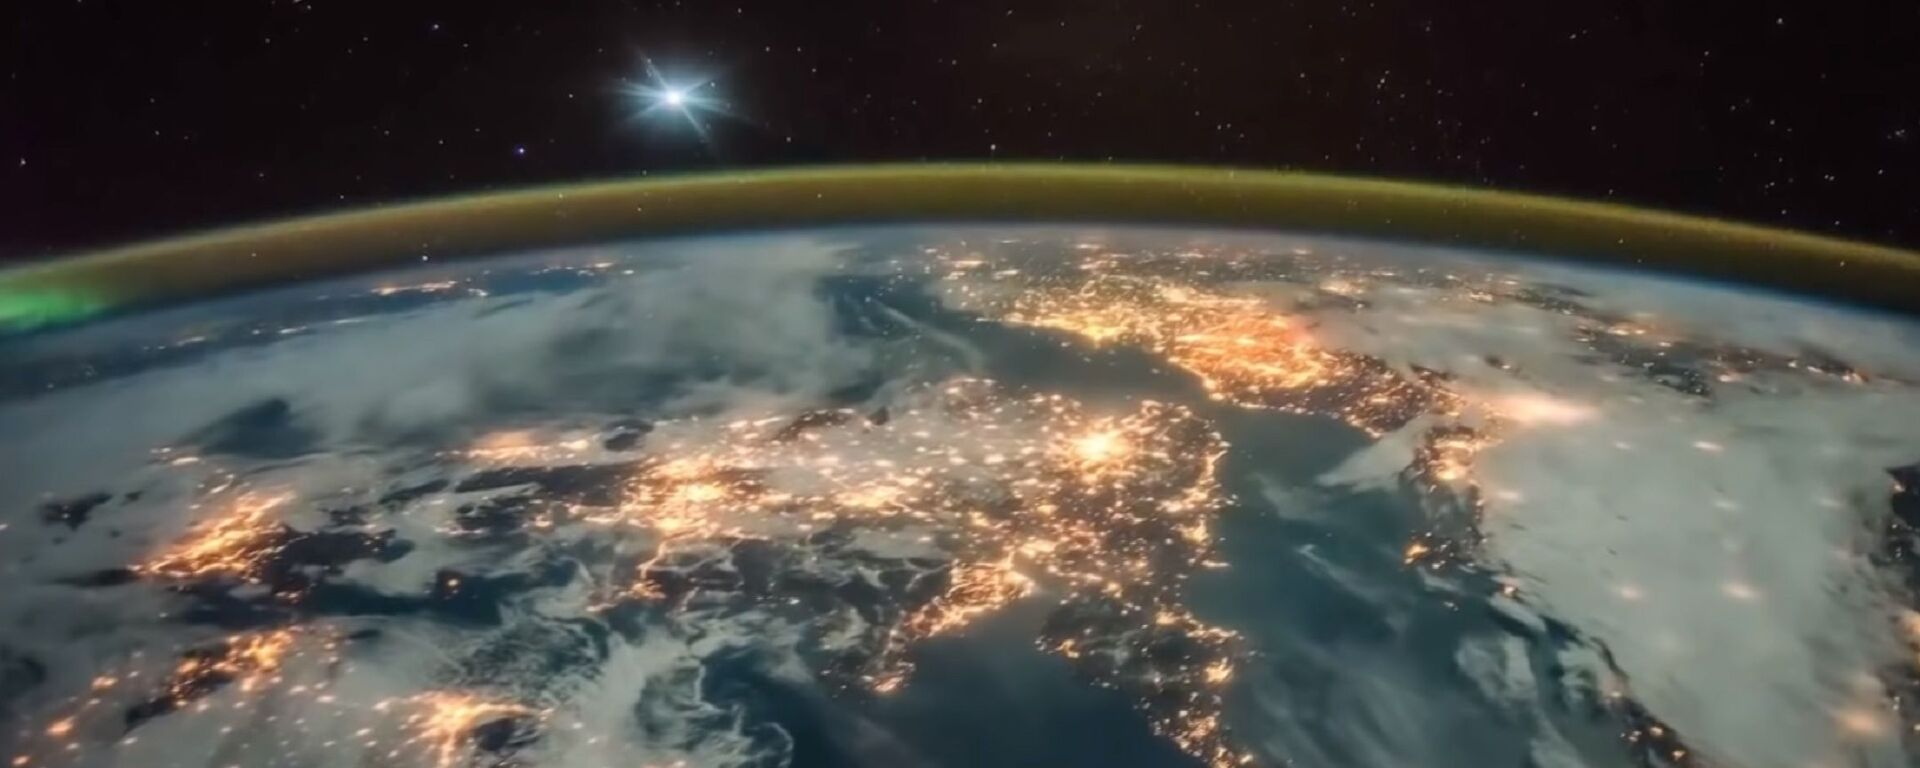 Snimak planete Zemlje sa međunarodne svemirske stanice - Sputnik Srbija, 1920, 19.06.2021